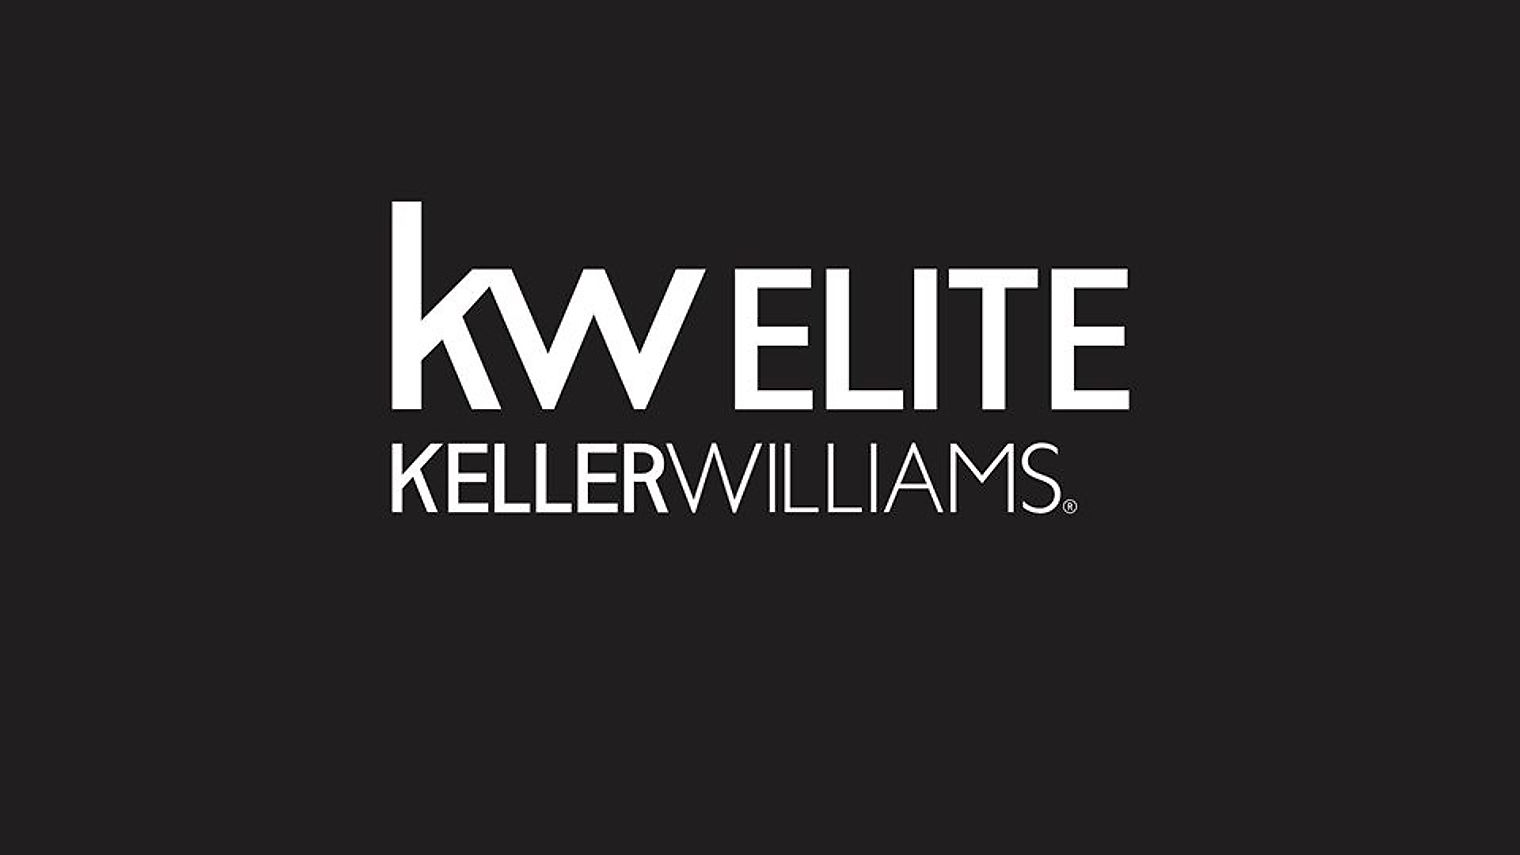 kwELITE Keller Williams Training